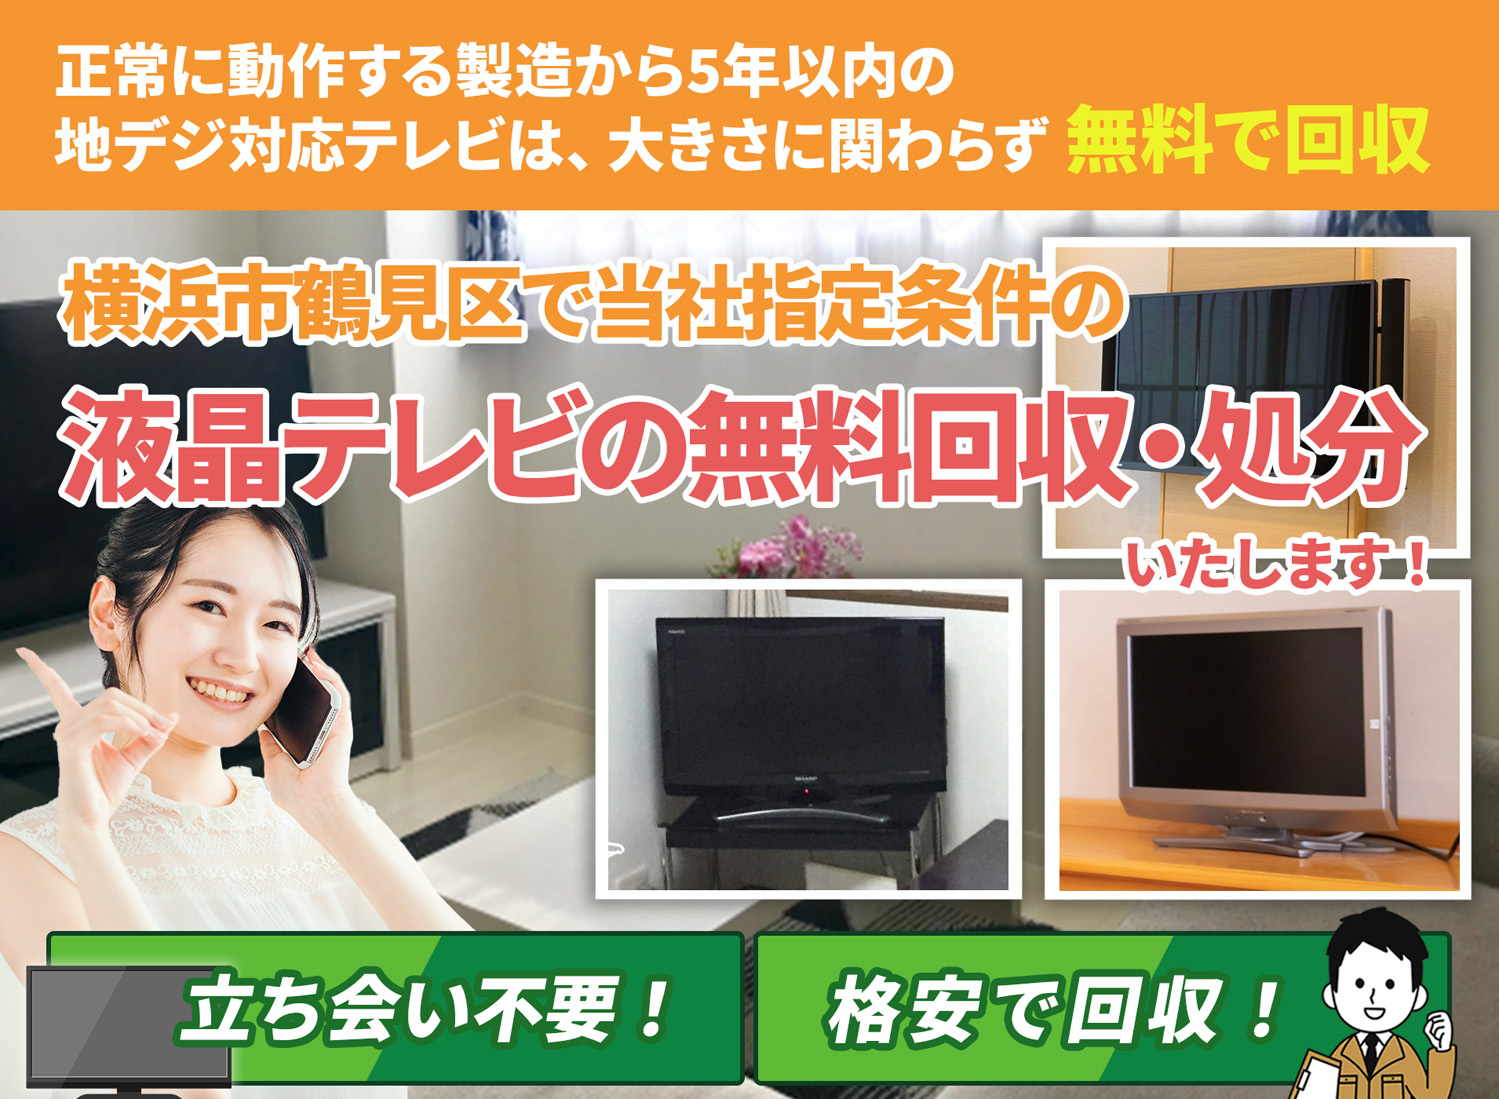 横浜市鶴見区で丁寧で安心できる液晶テレビ無料回収処分隊の液晶テレビ無料回収サービス